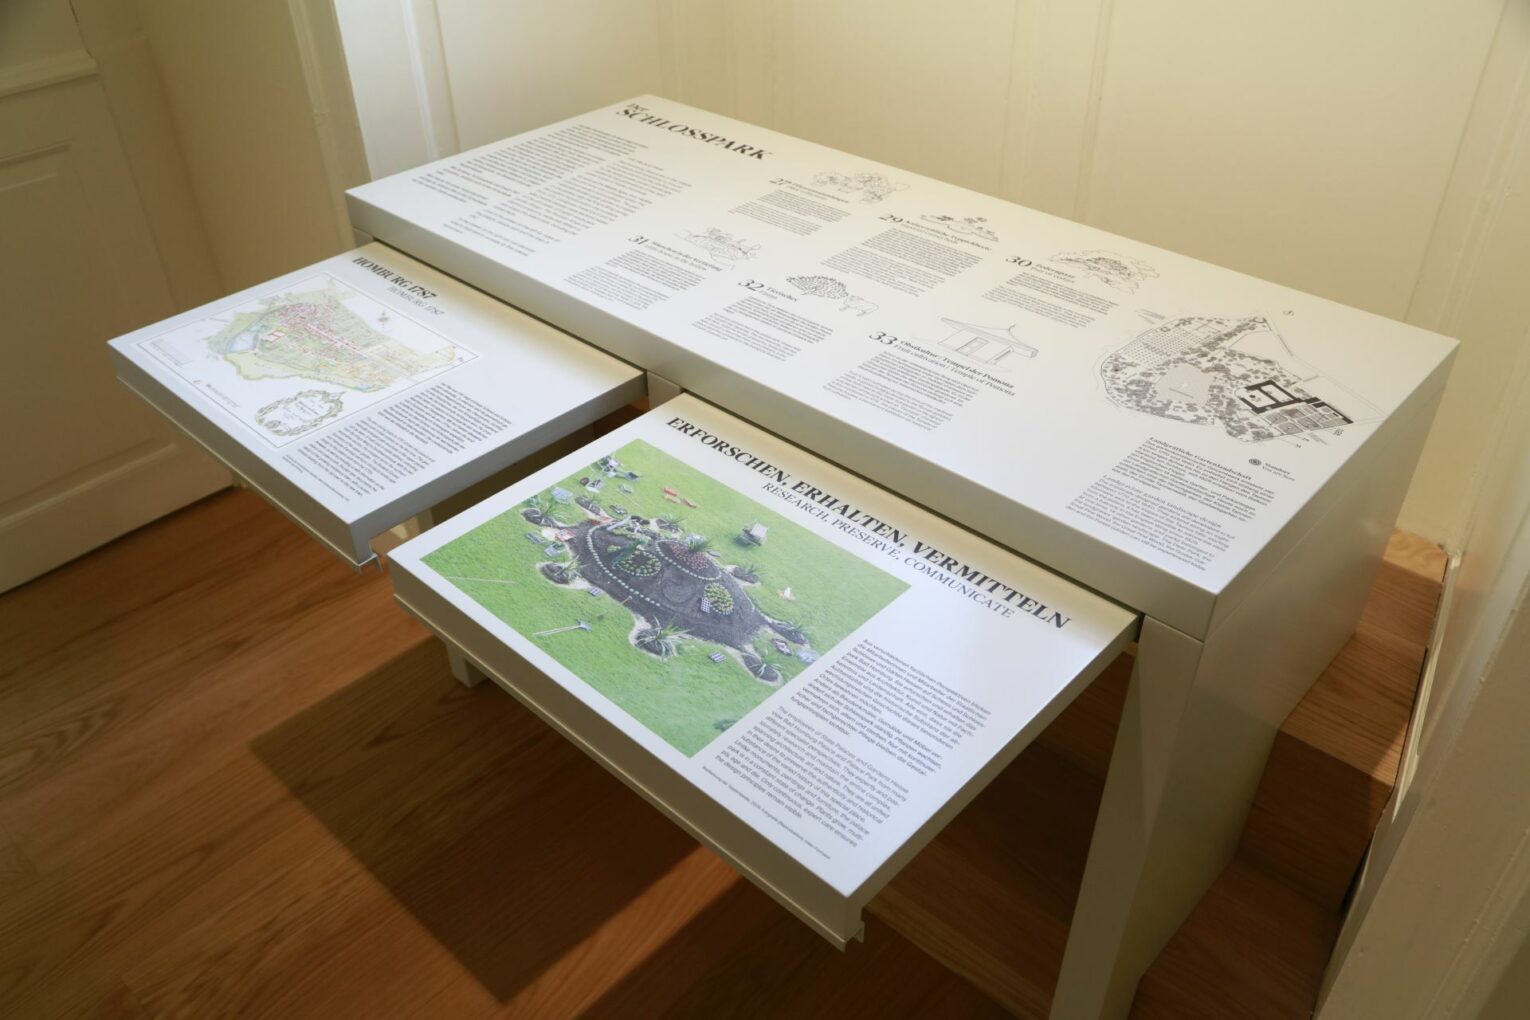 Fensterplatz zum Obergarten: Dieser Tisch mit Auszügen stellt den historischen Schlosspark und seine Besonderheiten vor.